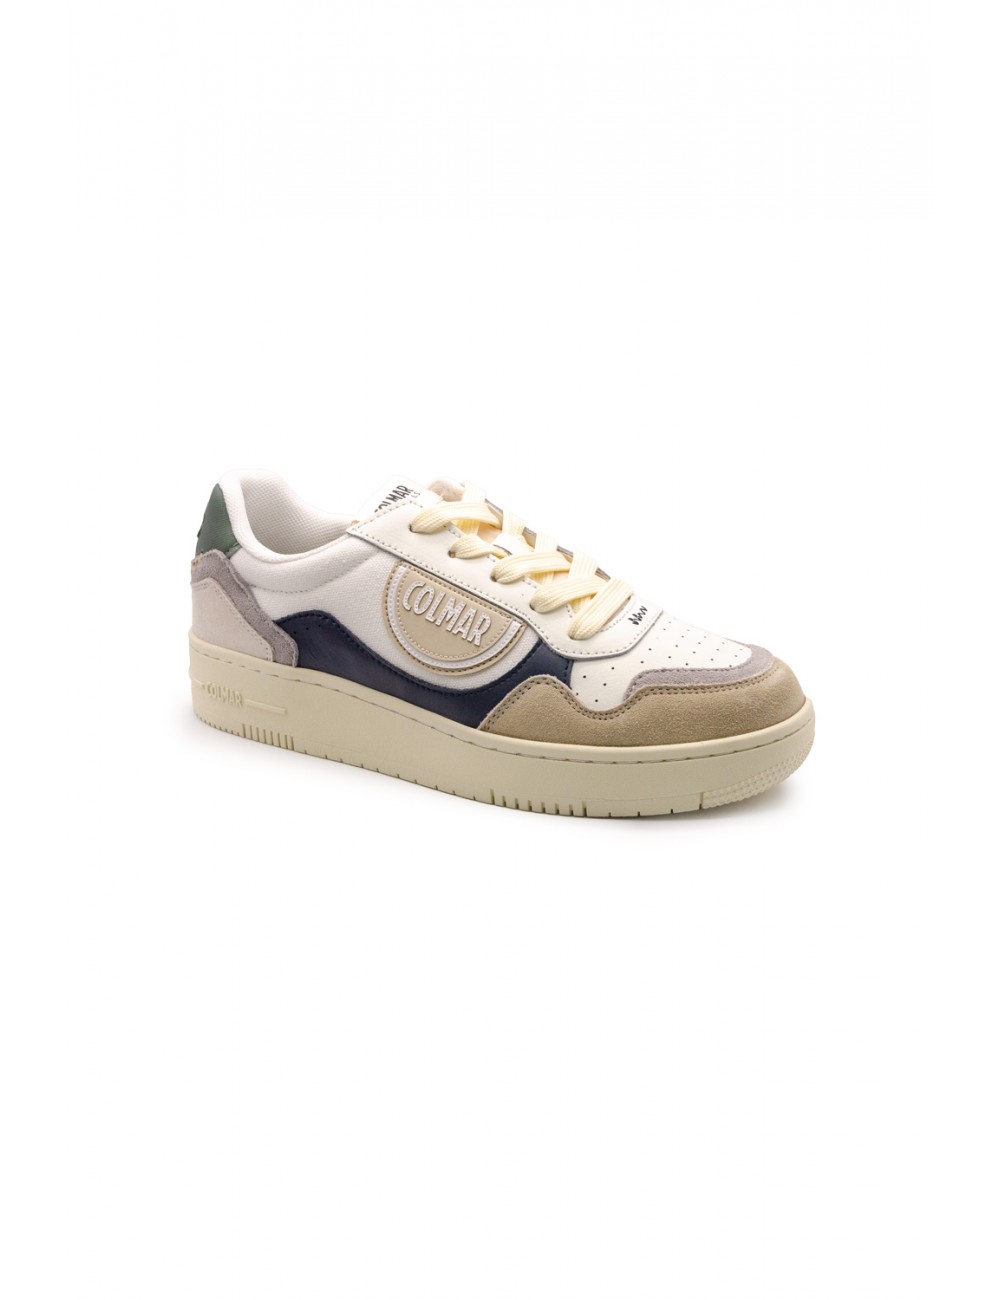 scarpe colmar UOMO MULTICOLORE WHITE-NAVY-SAGE GREEN - AUSTIN BRIEF 041 vista laterale